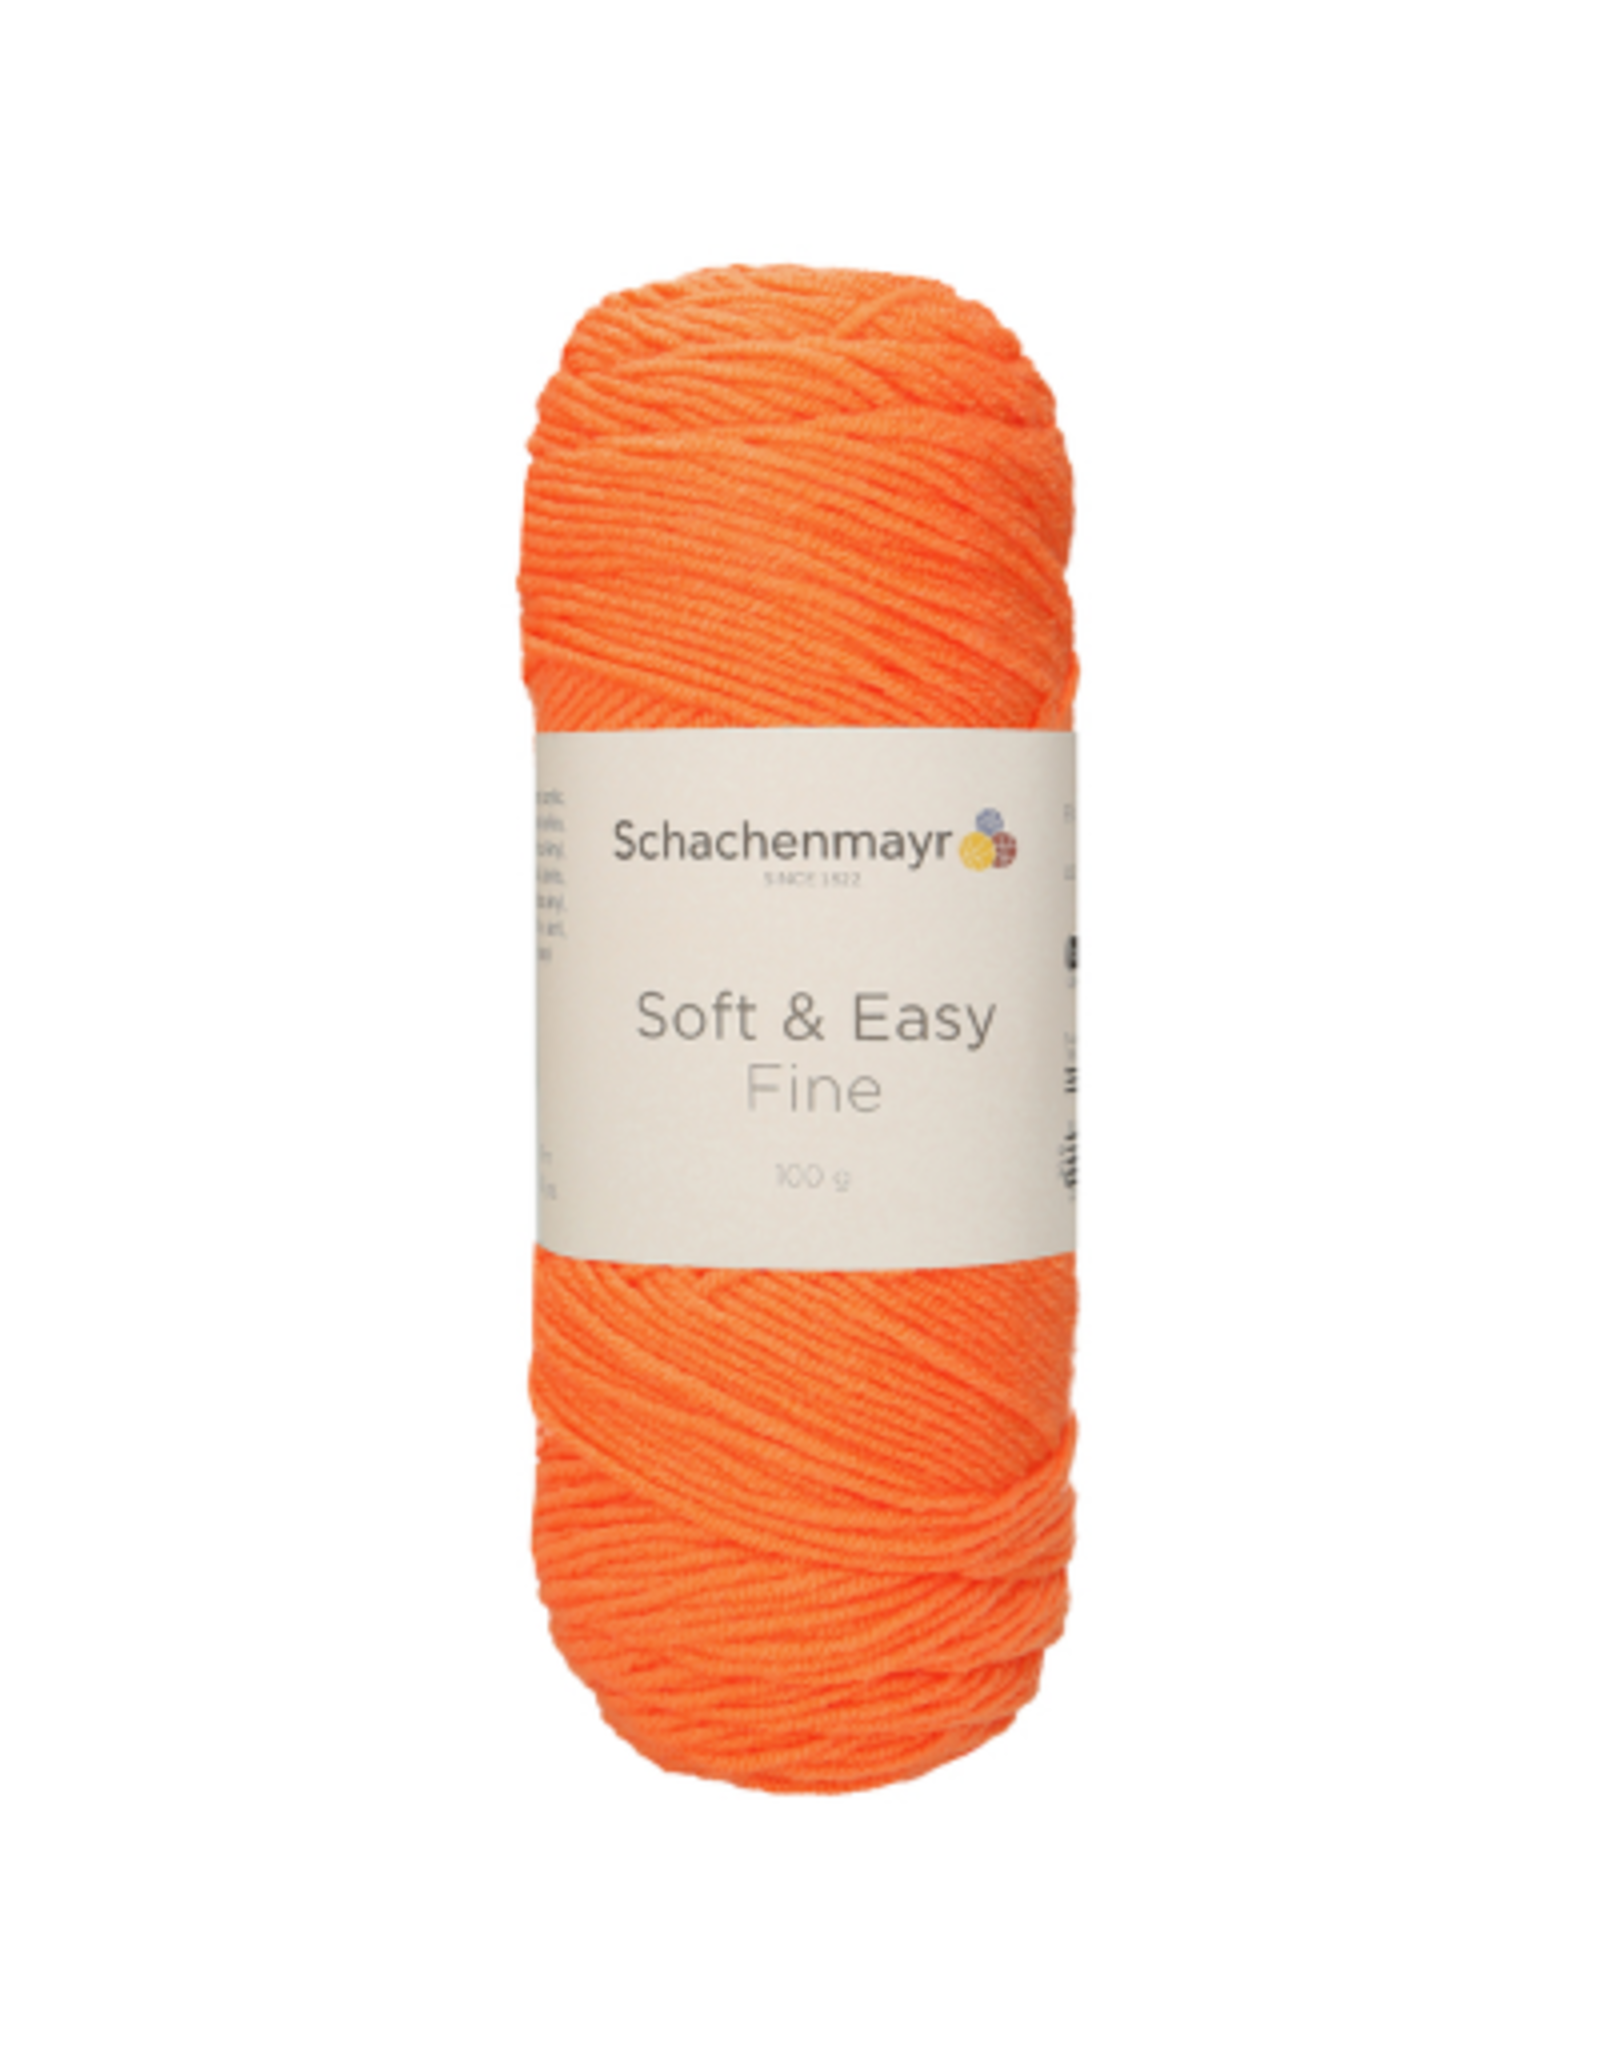 Schachenmayr Schachenmayr Soft & easy fine 25